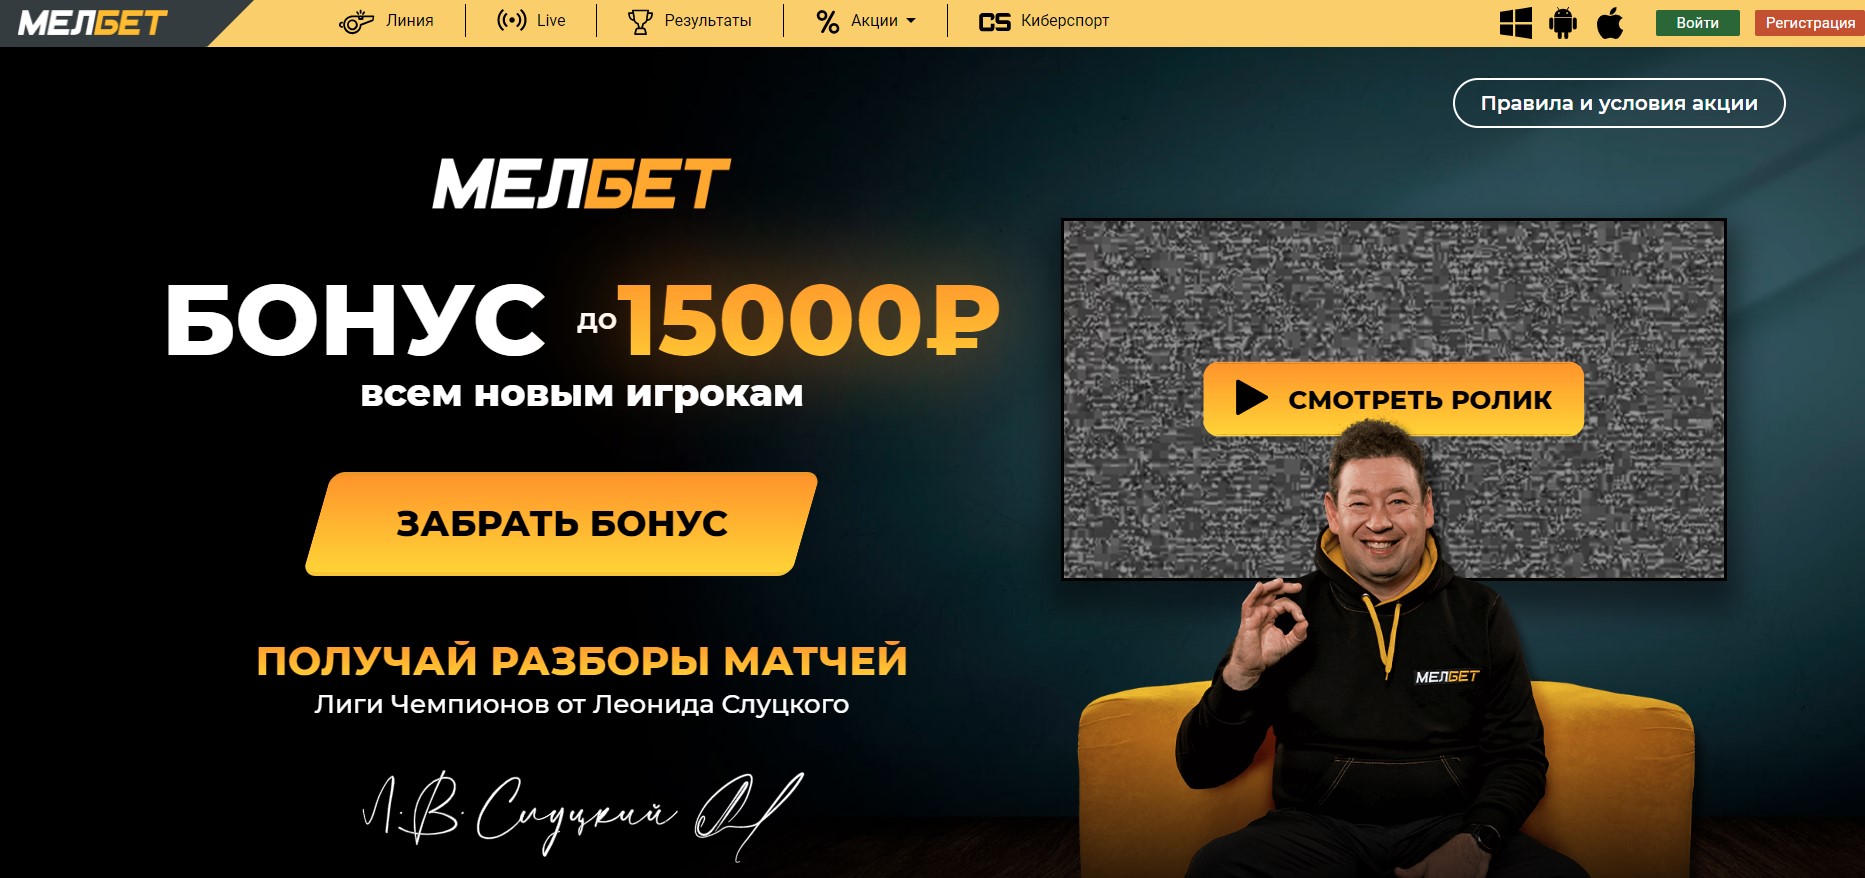 Также в Melbet доступен бонус всем новым игрокам – 15000 рублей